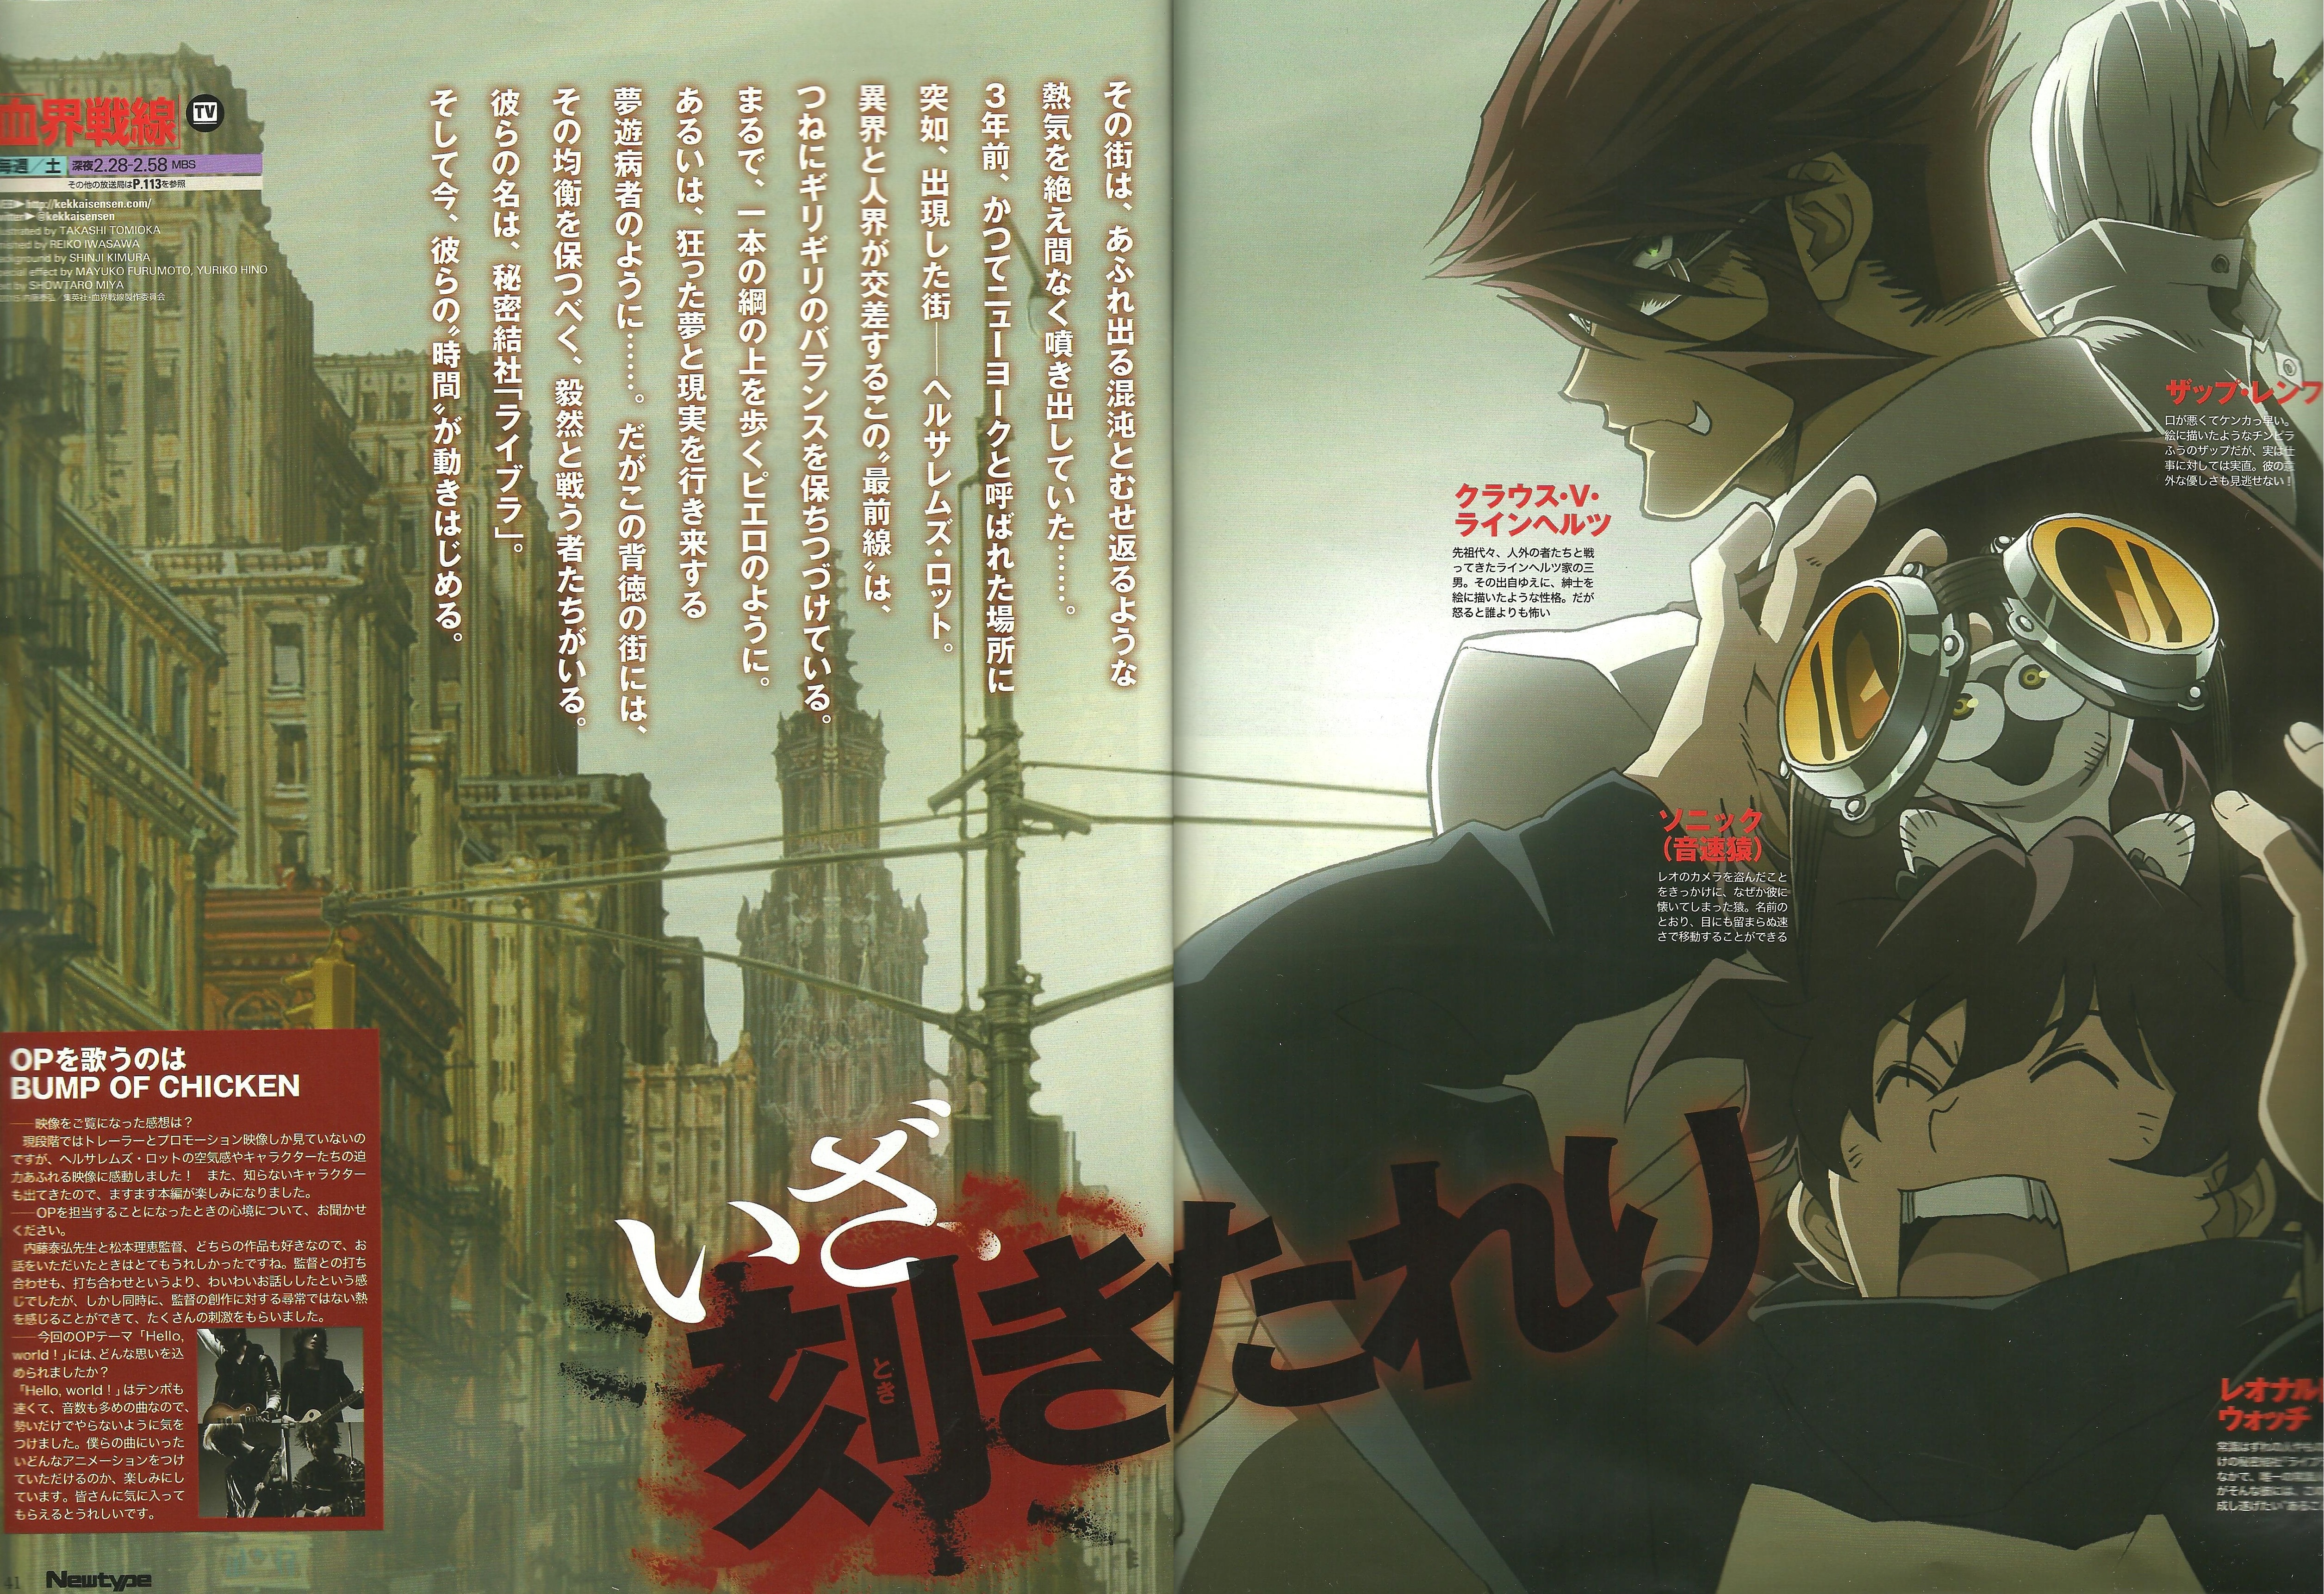 Yasuhiro Nightow, Takashi Tomioka, Kekkai Sensen, Klaus - War World 2 Anime - HD Wallpaper 